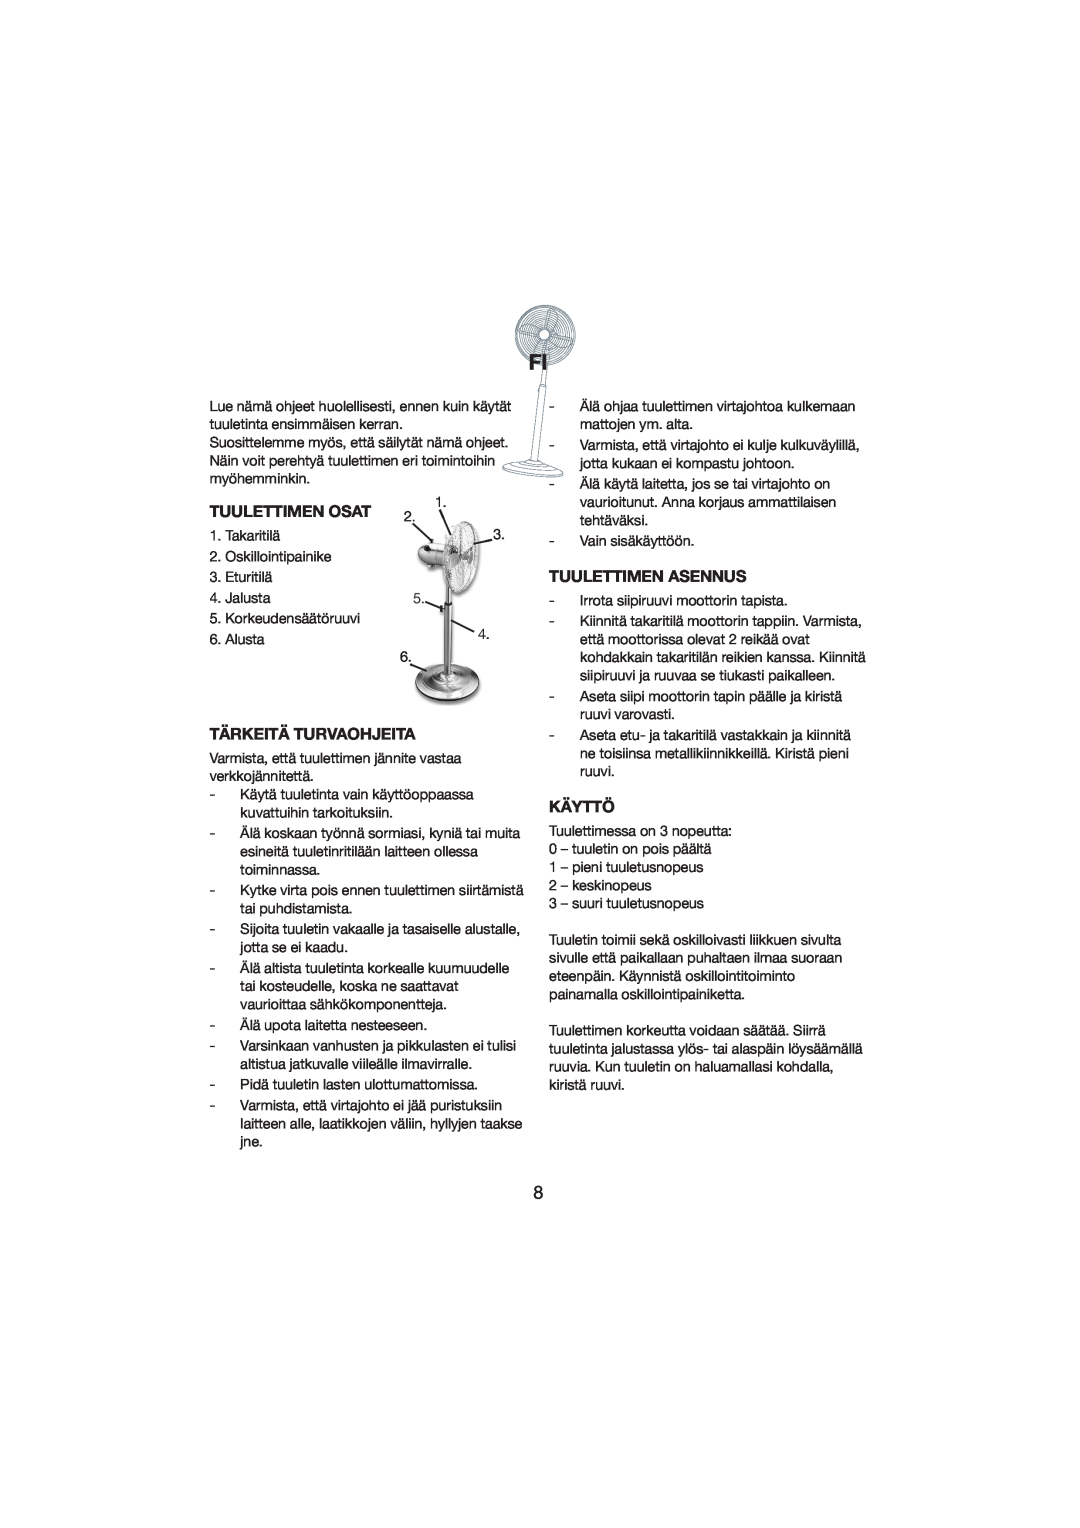 Melissa 271-002 manual Tuulettimen Osat, Tärkeitä Turvaohjeita, Tuulettimen Asennus, Käyttö 